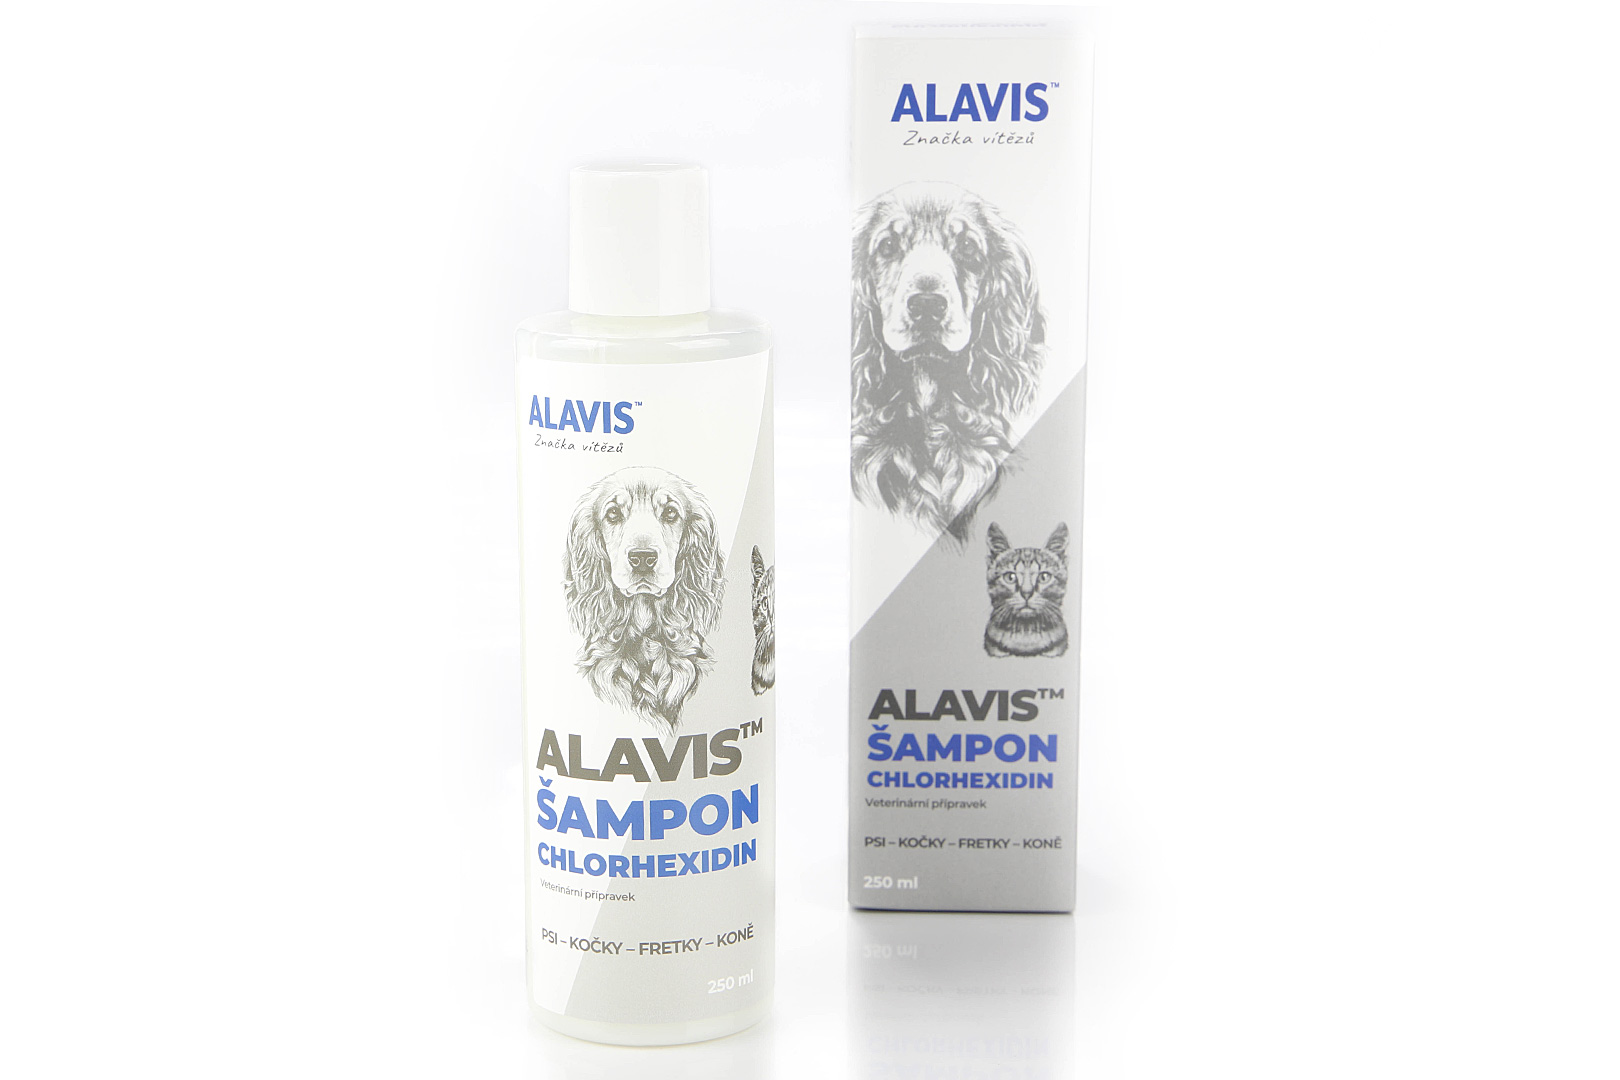 ALAVIS CHLORHEXIDIN šampon pro psy, kočky, fretky, koně, 250 ml